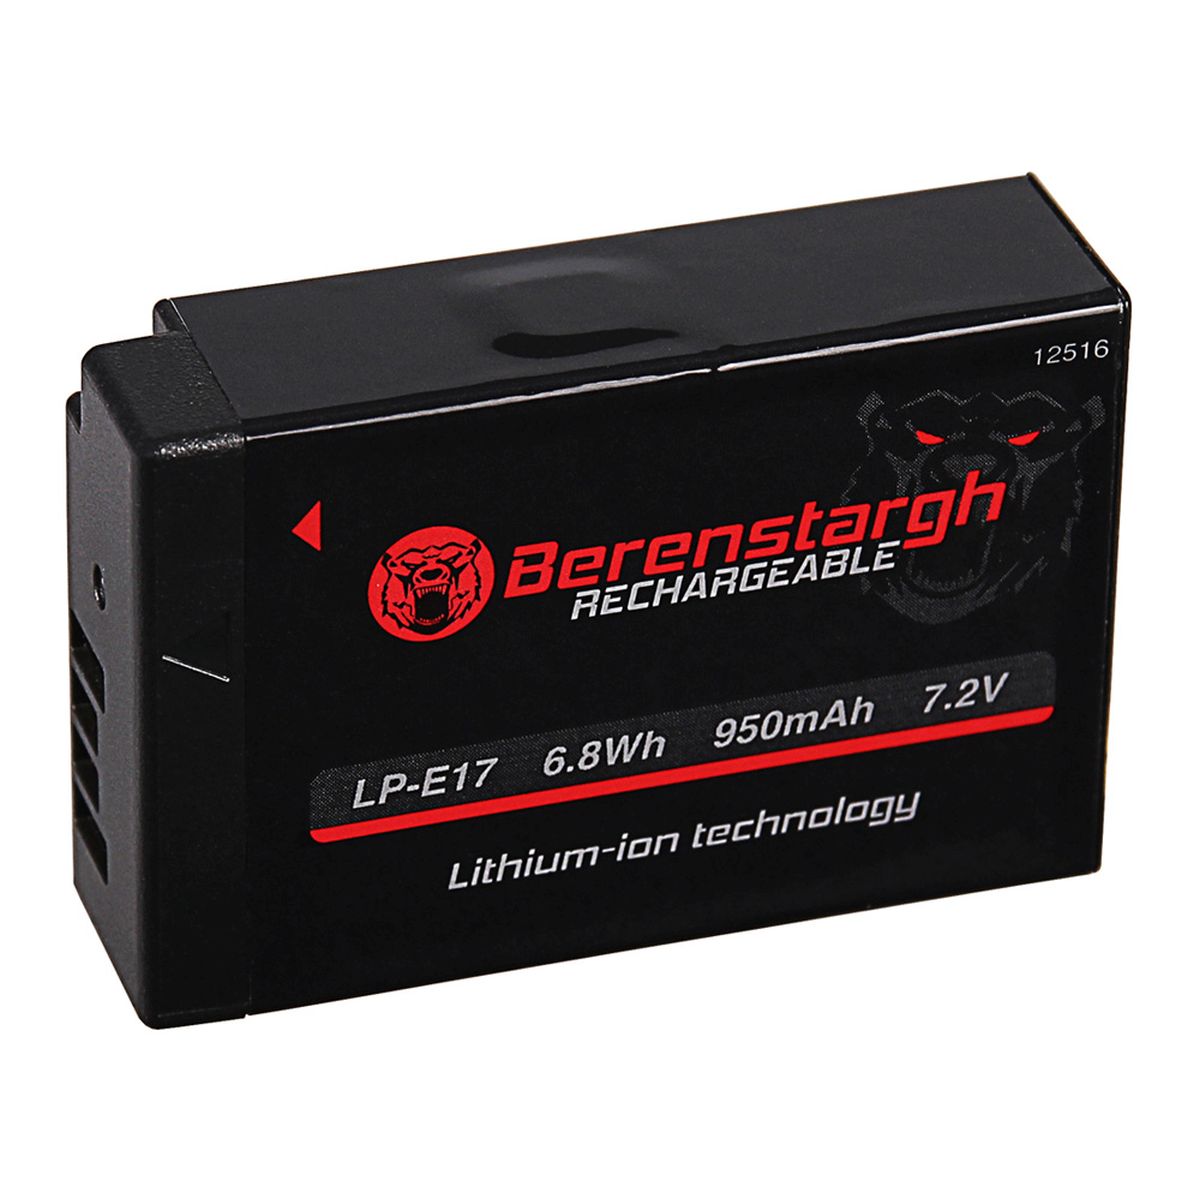 Berenstargh Canon LP-E 17 